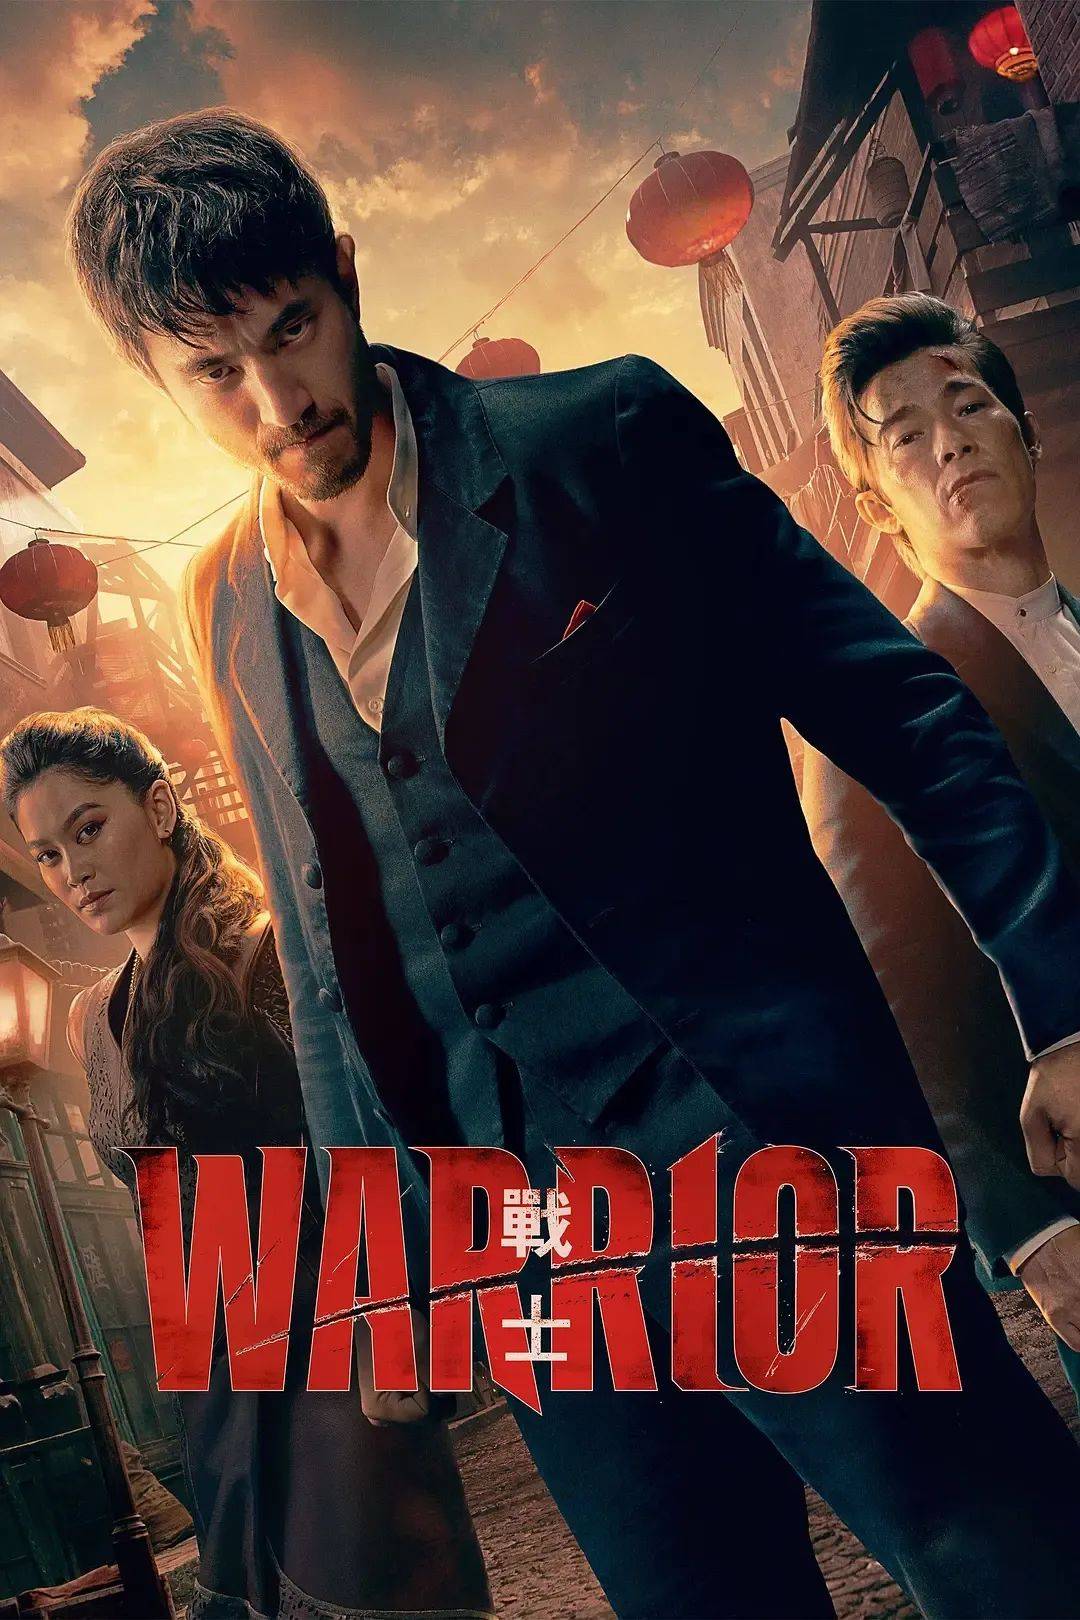 warrior《战士》第三季一共五部值得一看的剧,没看这几期推荐的剧迷